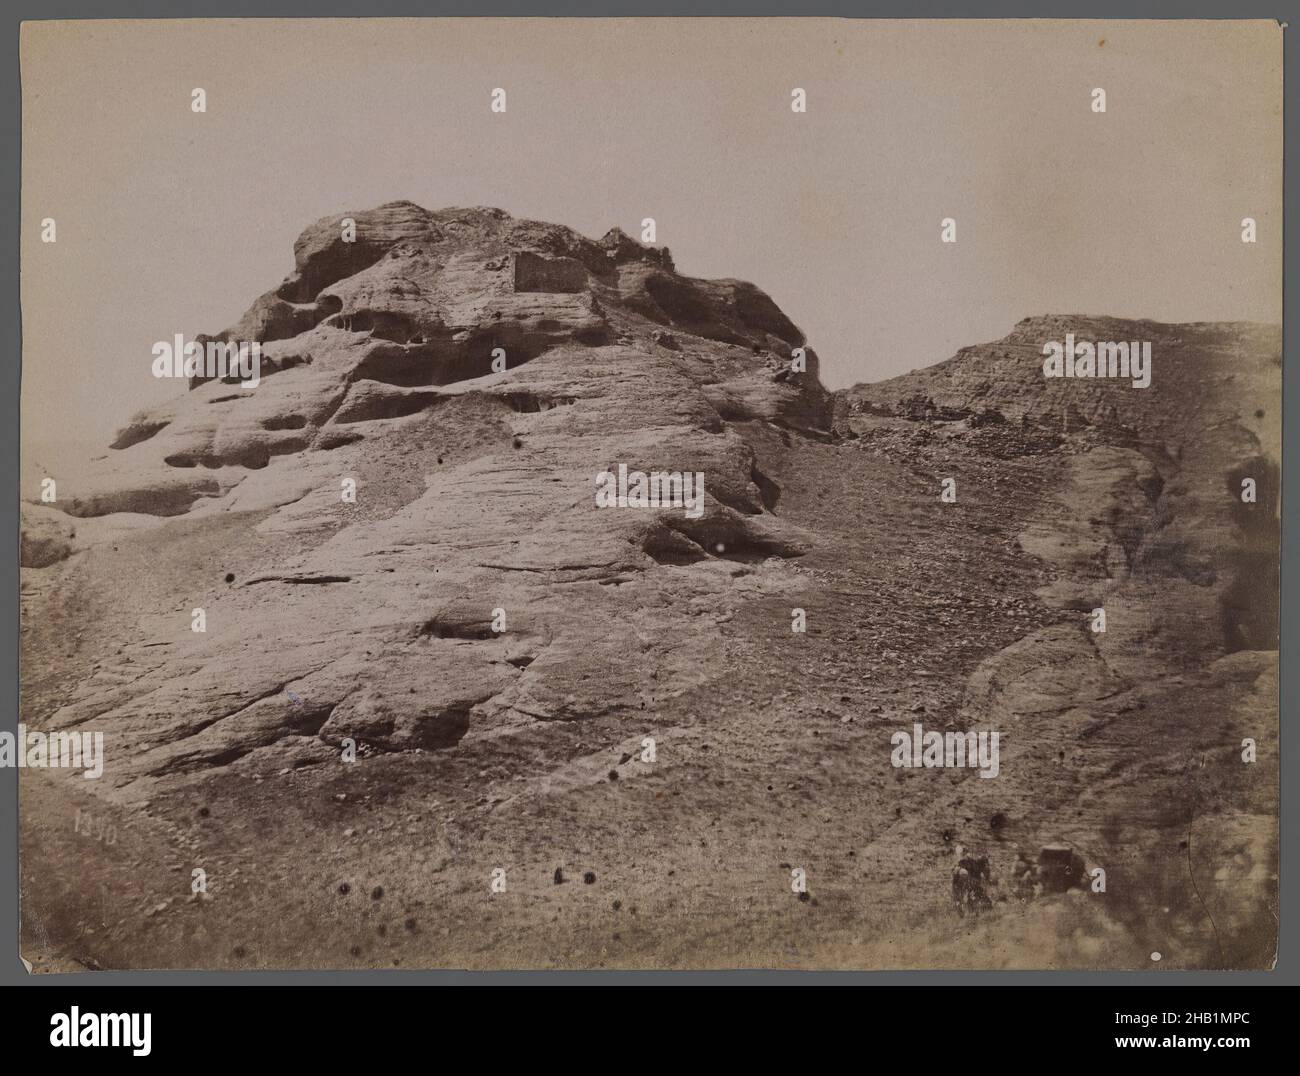 Una delle 274 fotografie d'epoca, fotografia, fine 19th-inizio 20th secolo, Qajar, periodo Qajar, 8 3/16 x 6 3/16 pollici, 20,8 x 15,7 cm, deserto, Medio Oriente, montagna, fotografia, fotografia, rock Foto Stock